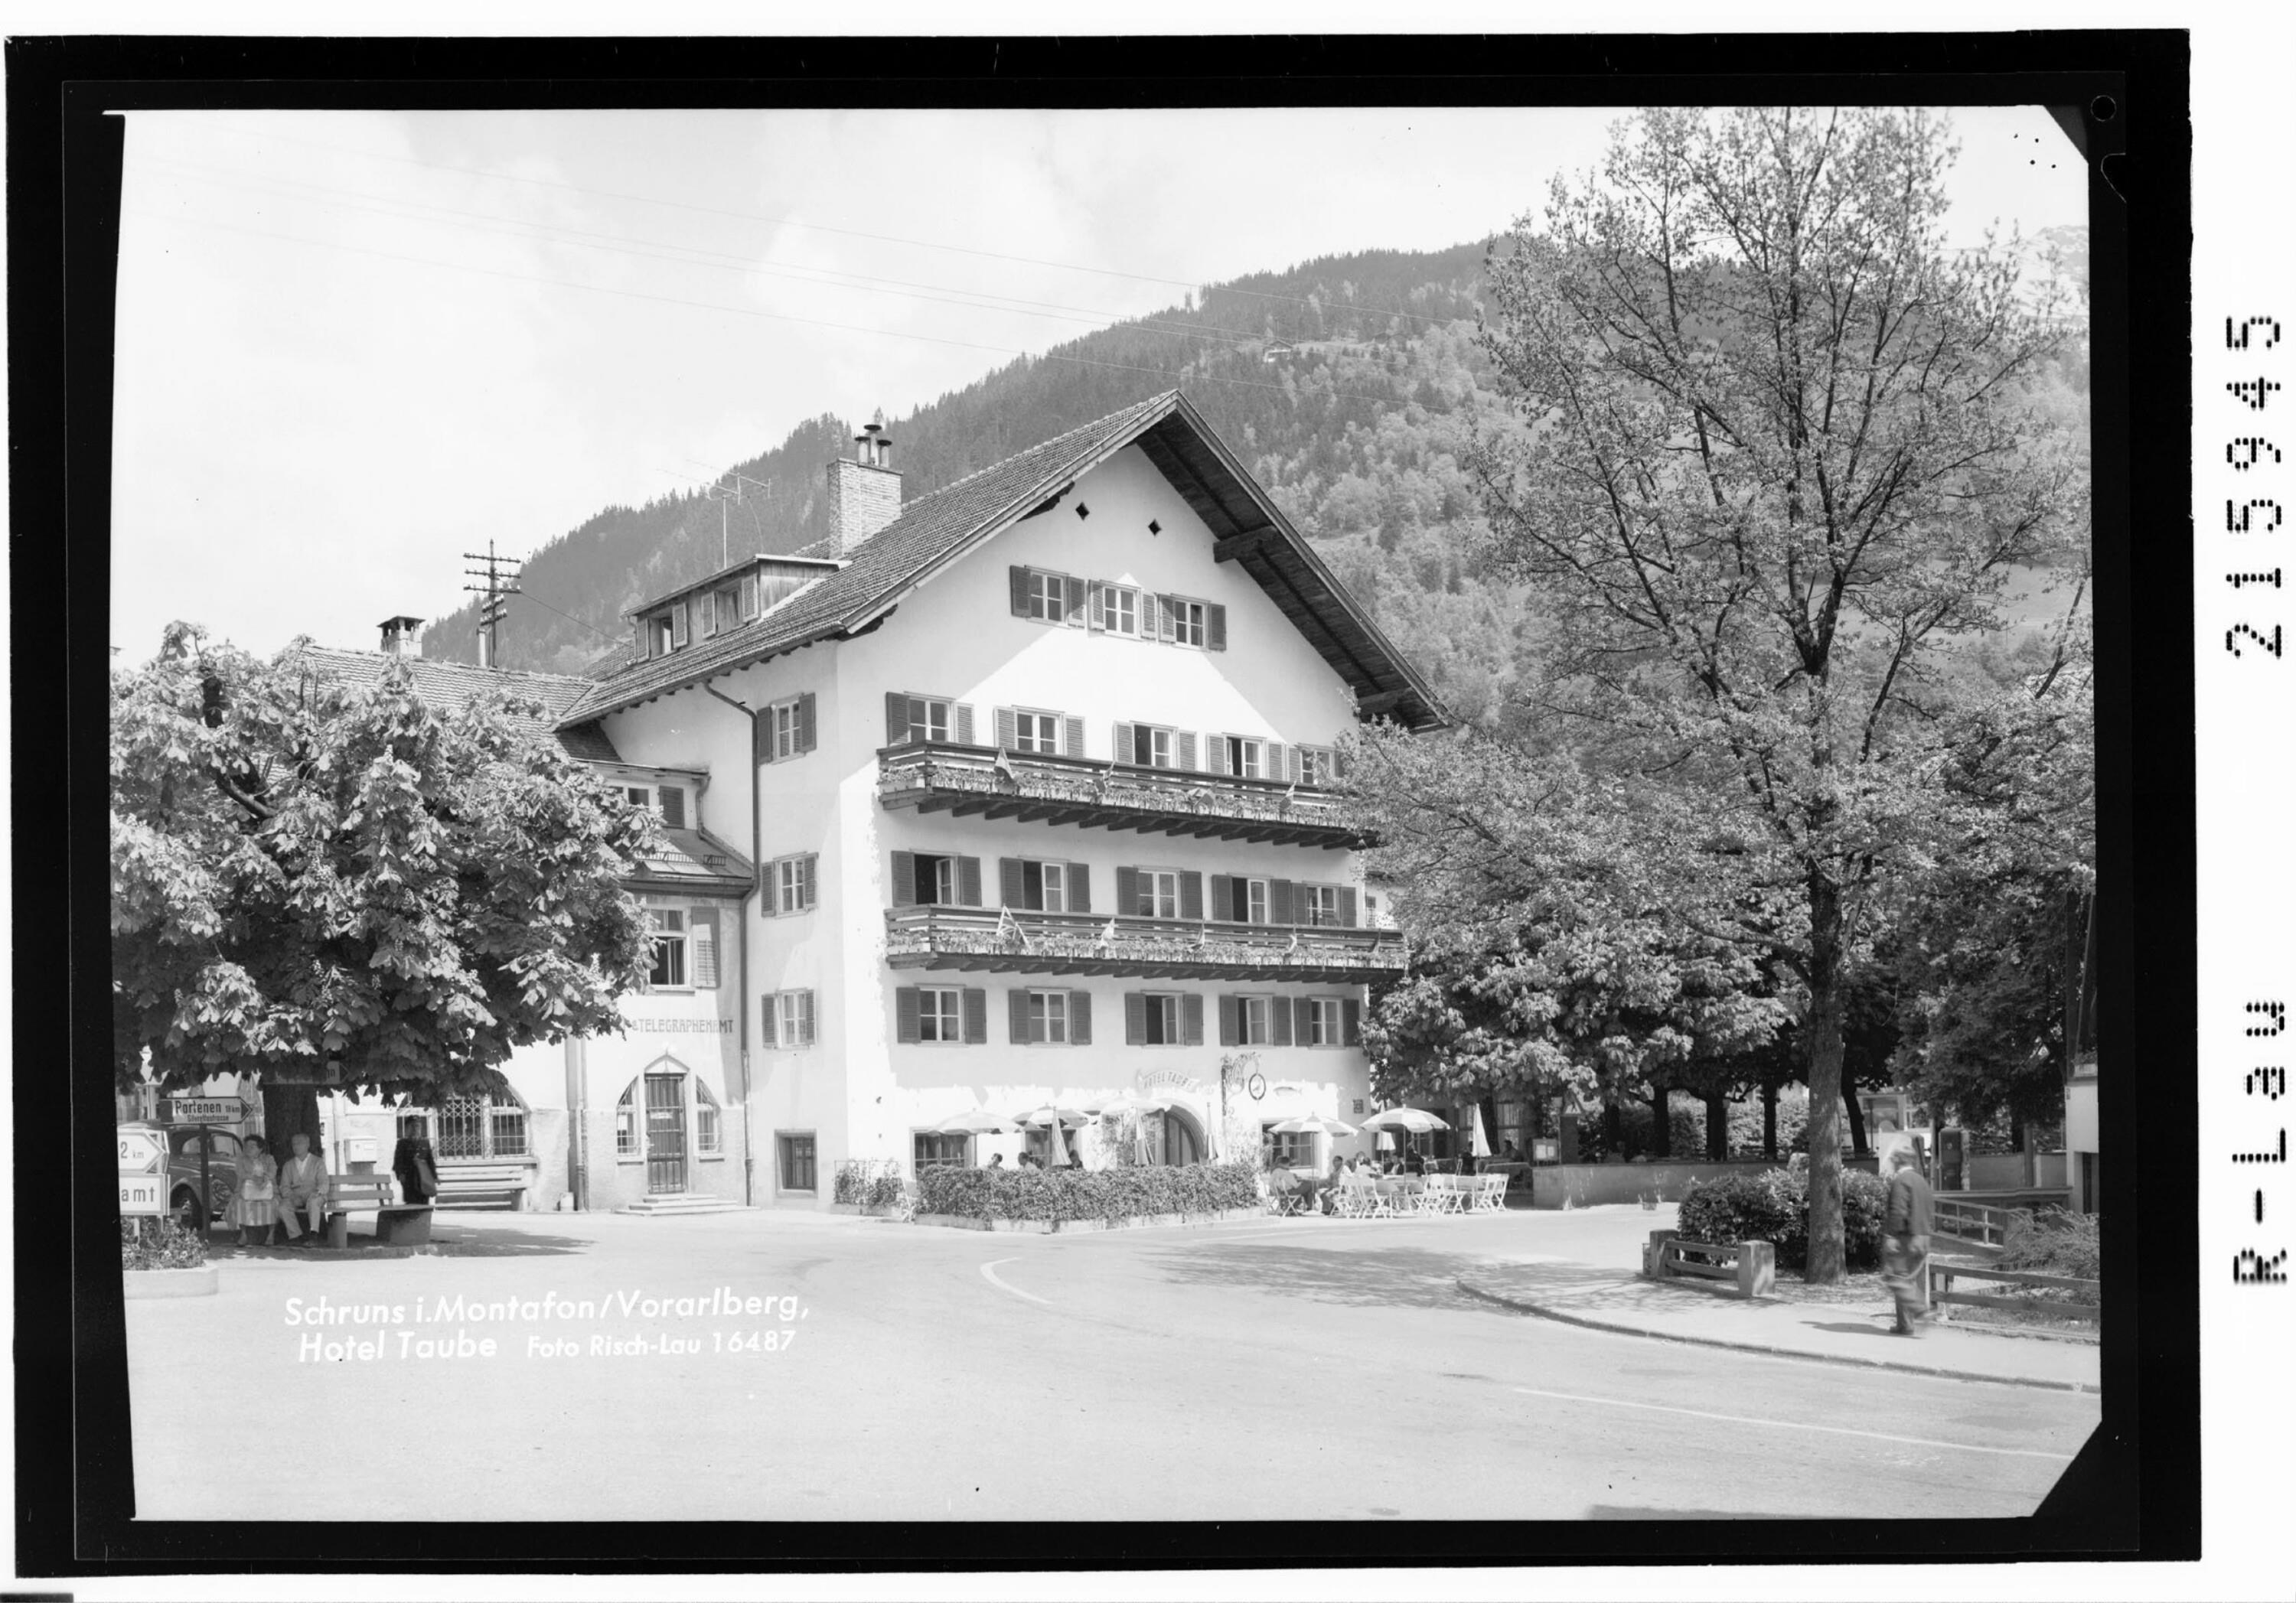 Schruns im Montafon / Vorarlberg, Hotel Taube></div>


    <hr>
    <div class=